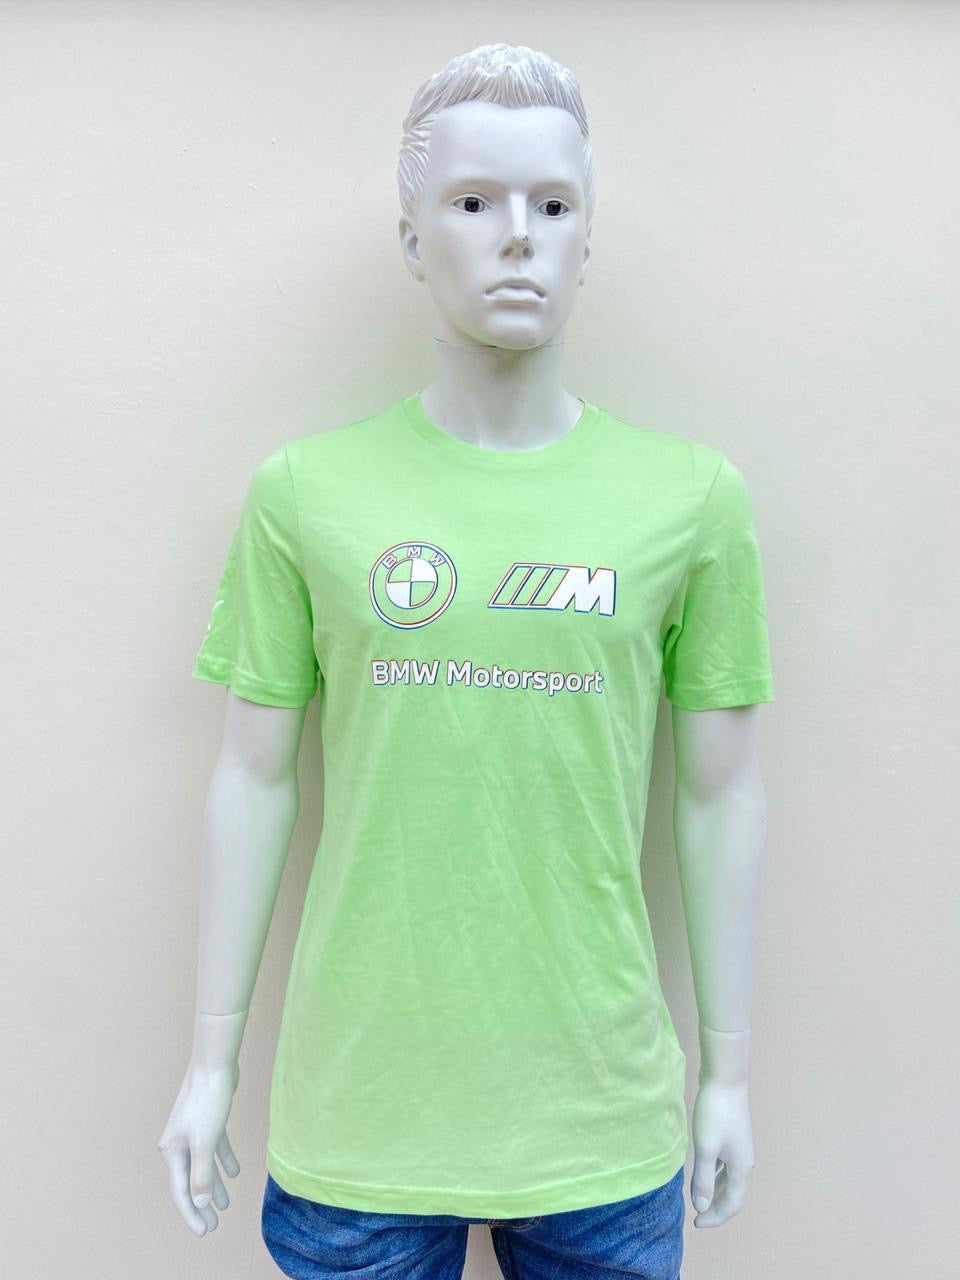 T- Shirt Puma original verde claro con logo(BMW Motorsport) letras blancas con azul y rojo.